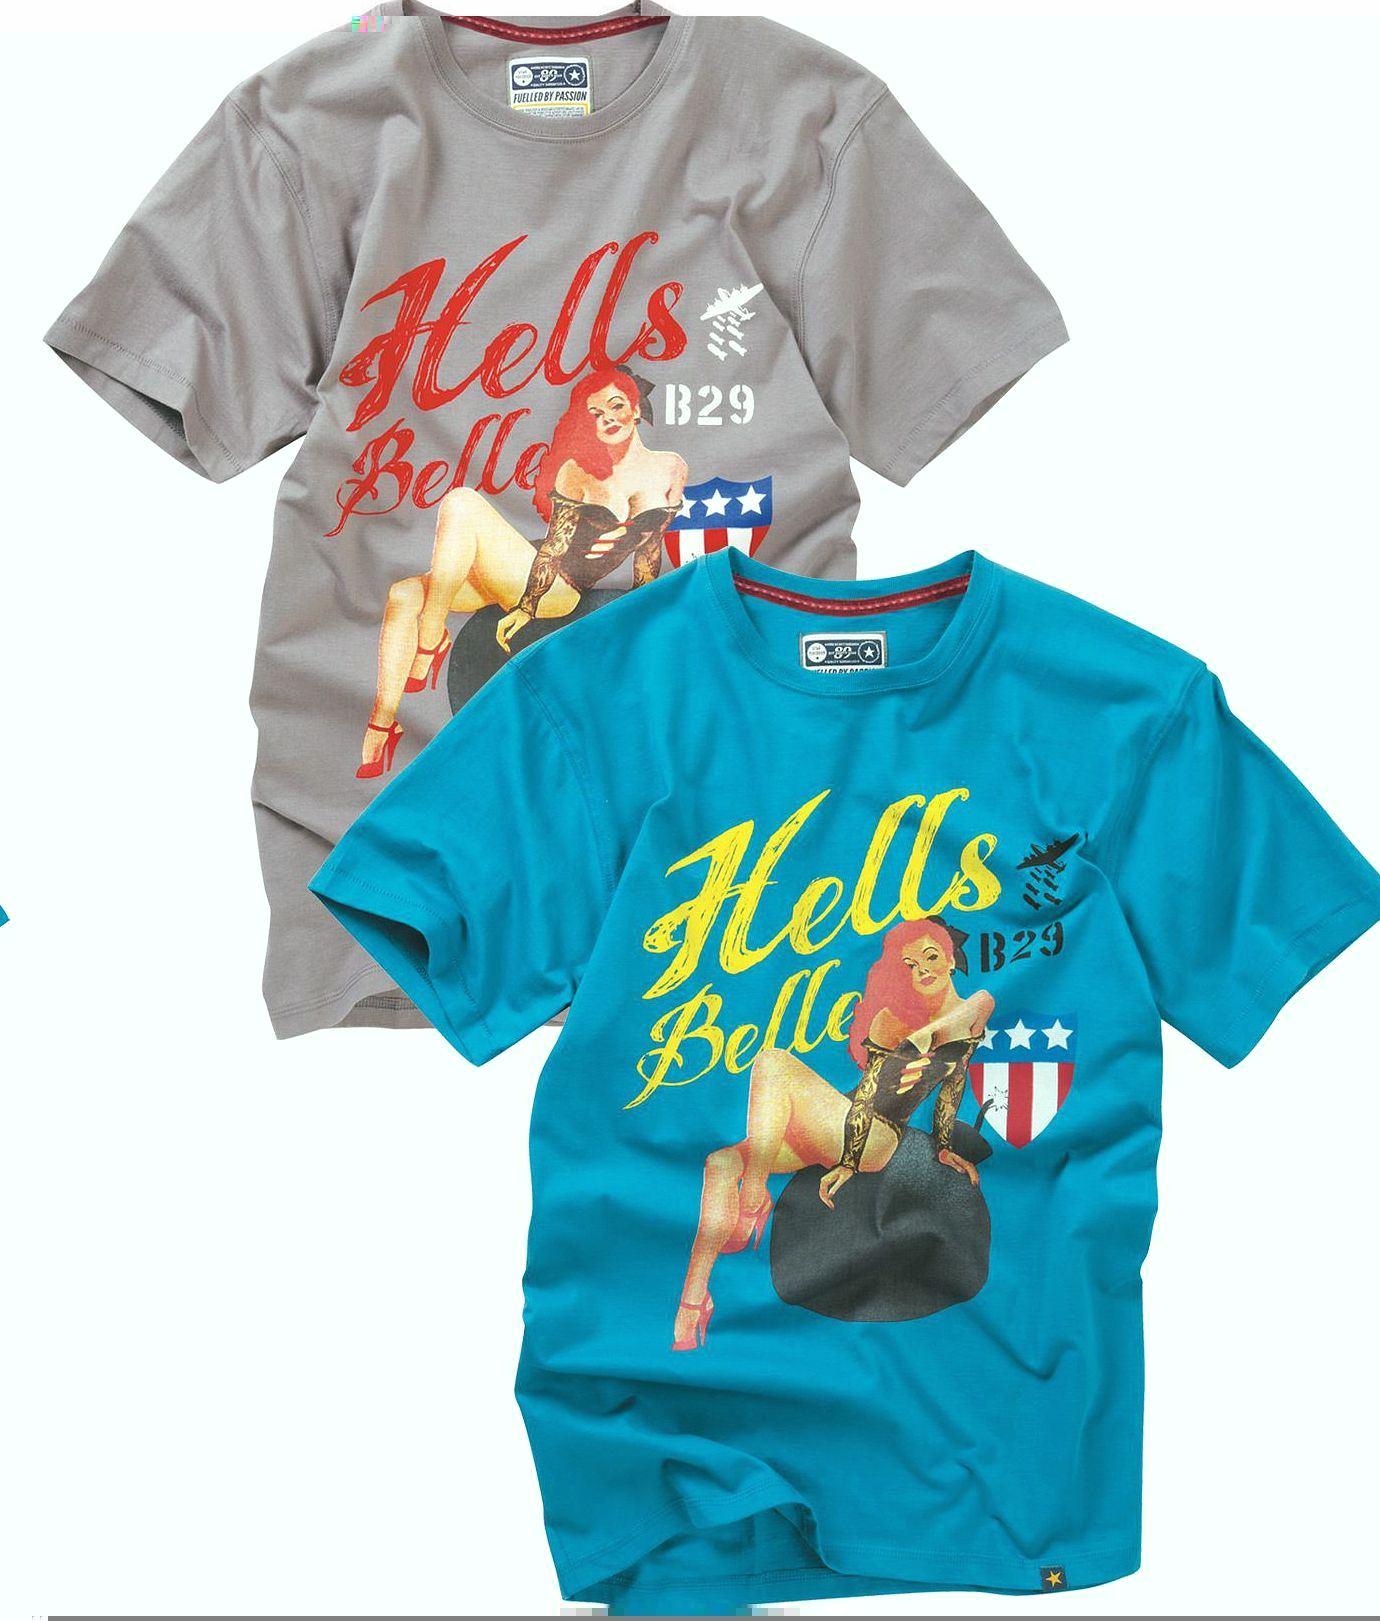 Unbranded Hells Belle T-Shirt